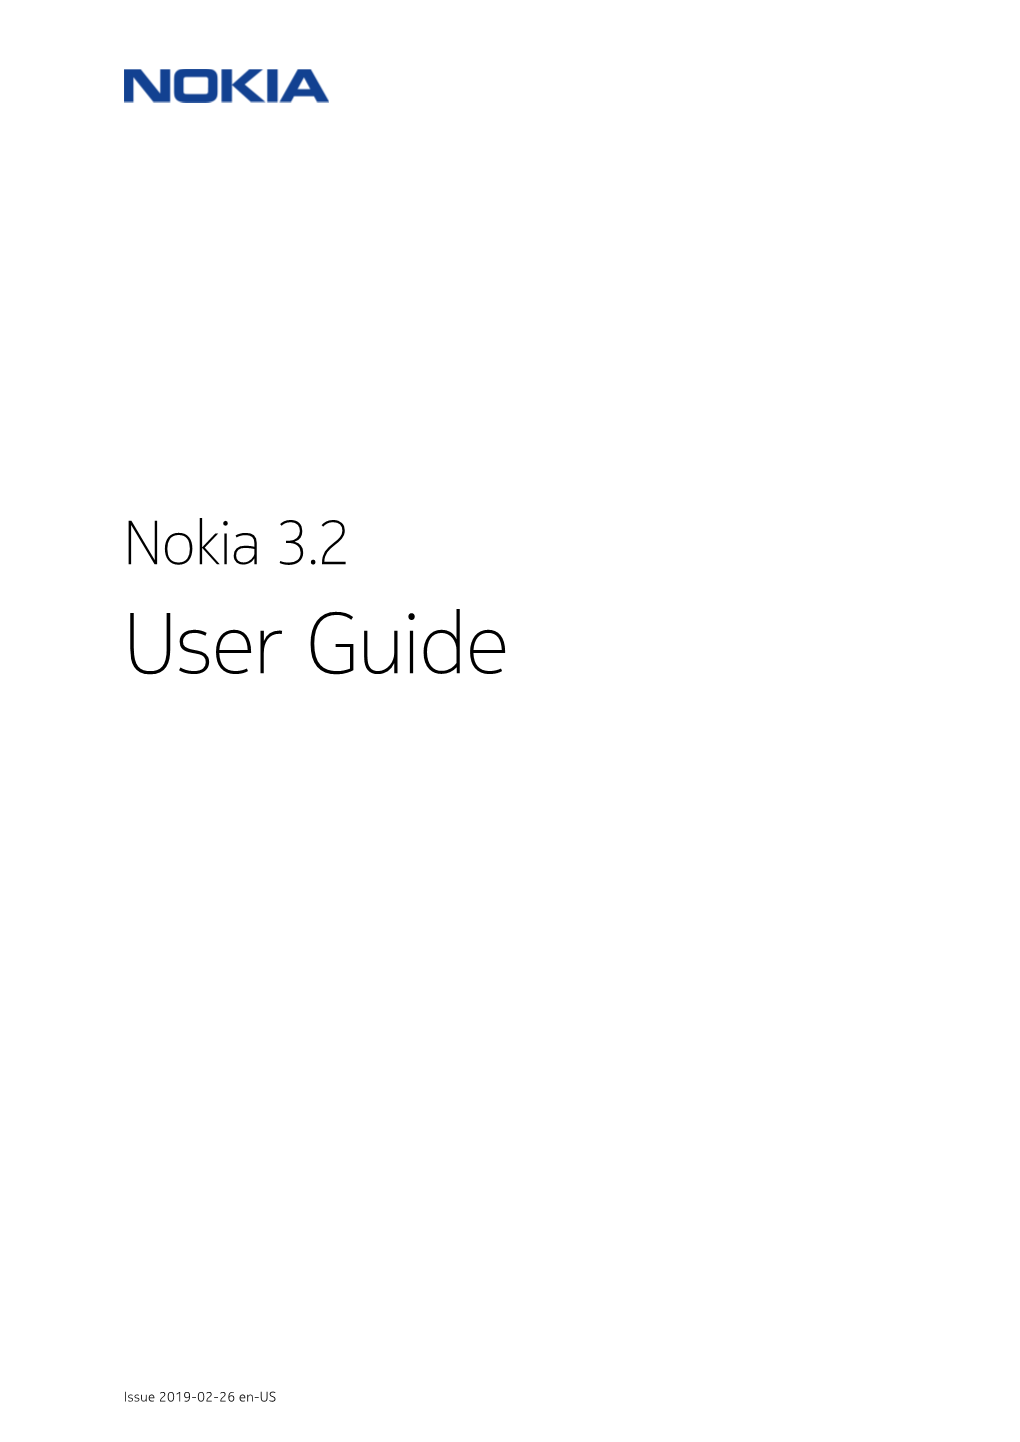 Nokia 3.2 Manual